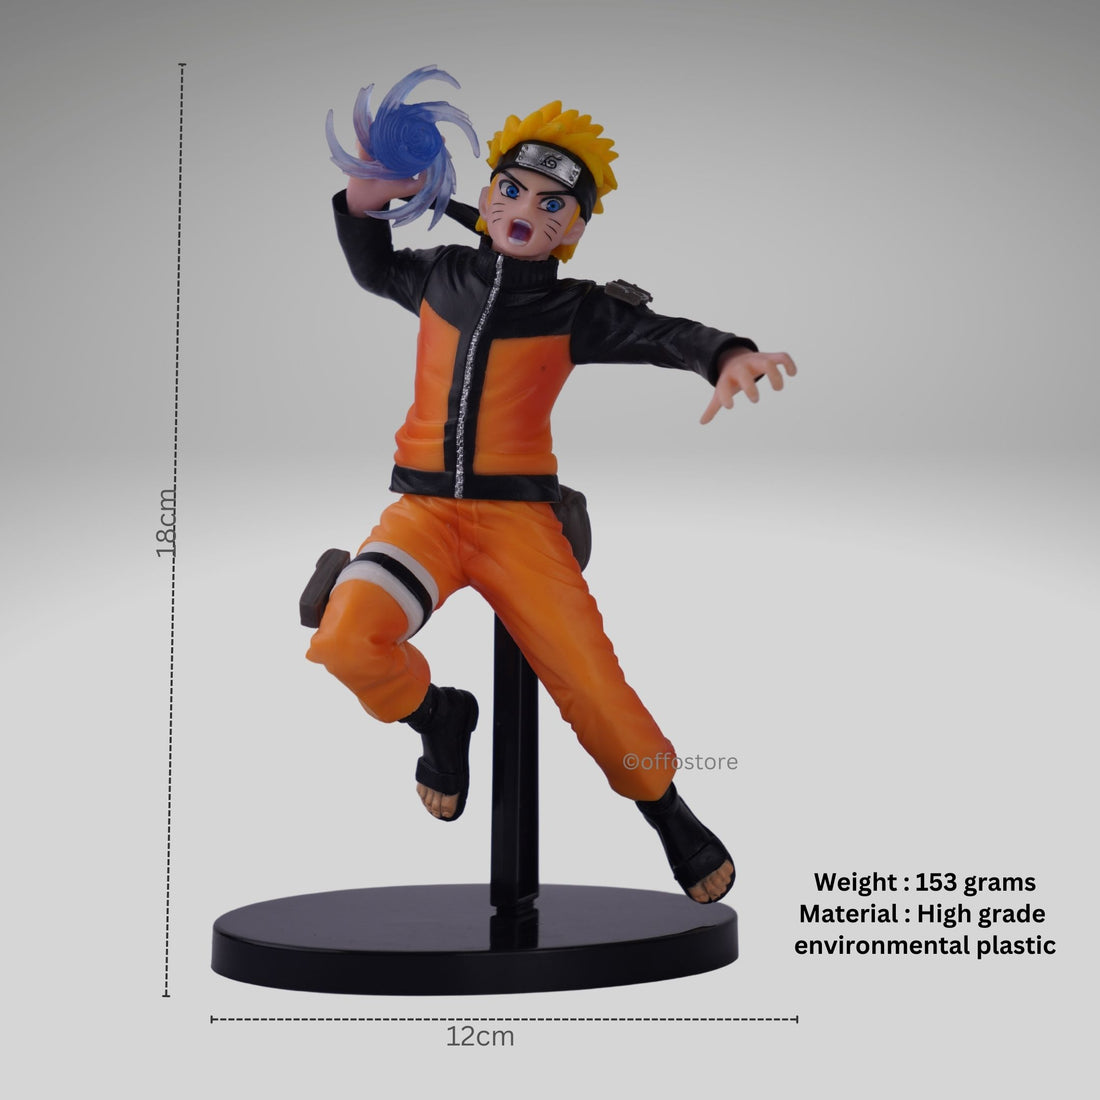 Naruto Rasengan Anime Action Figure - B Action Figure [18cm]